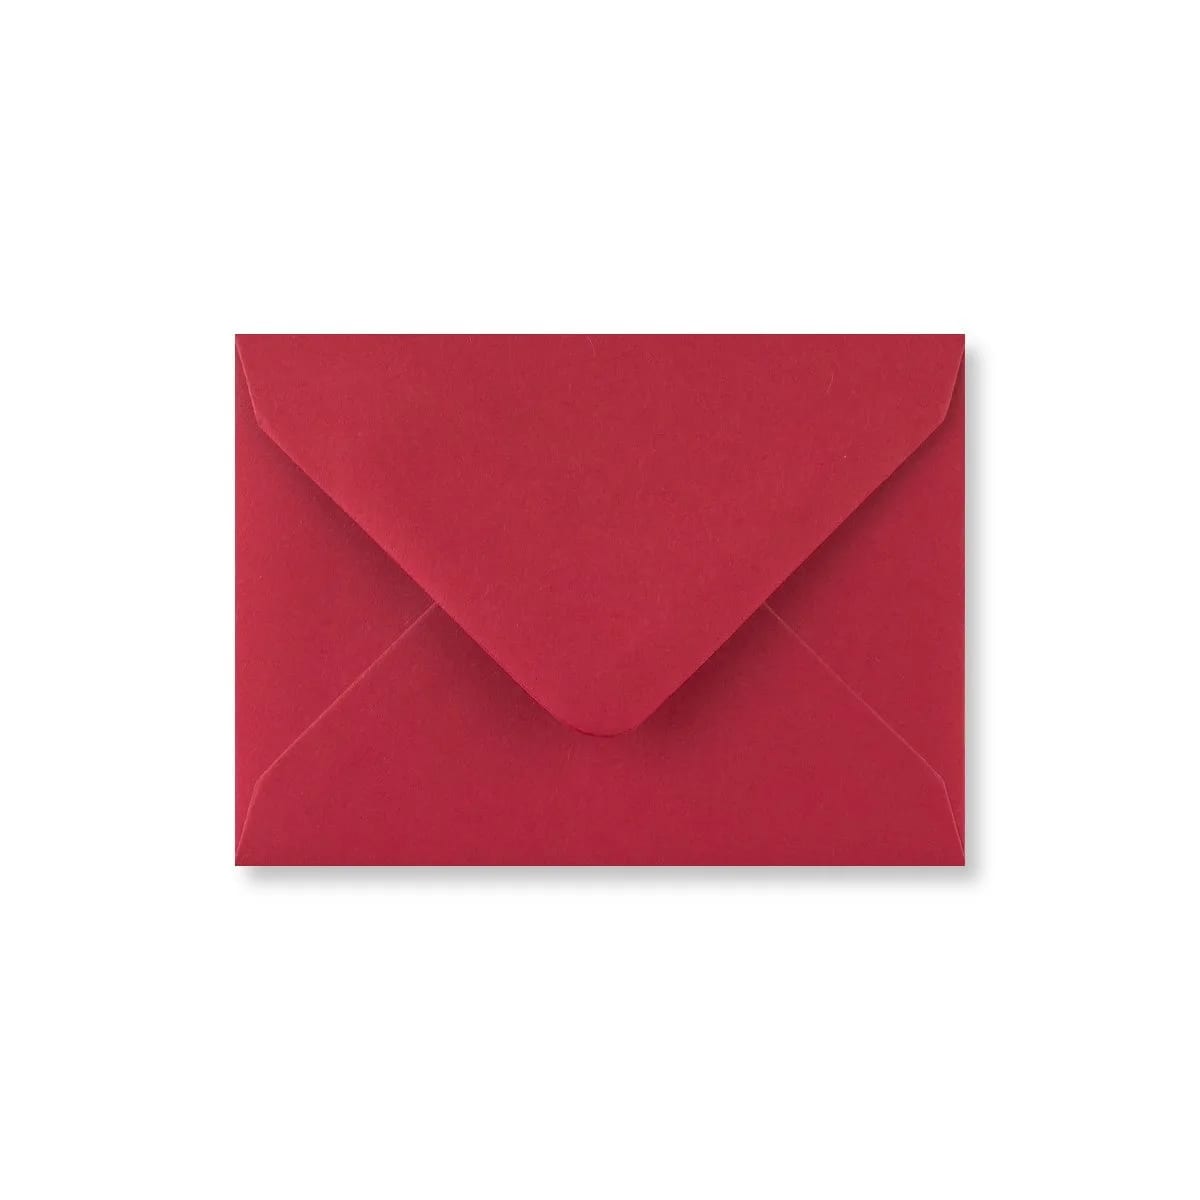 6.38 x 9.02 " Scarlet Red Envelopes 68lb